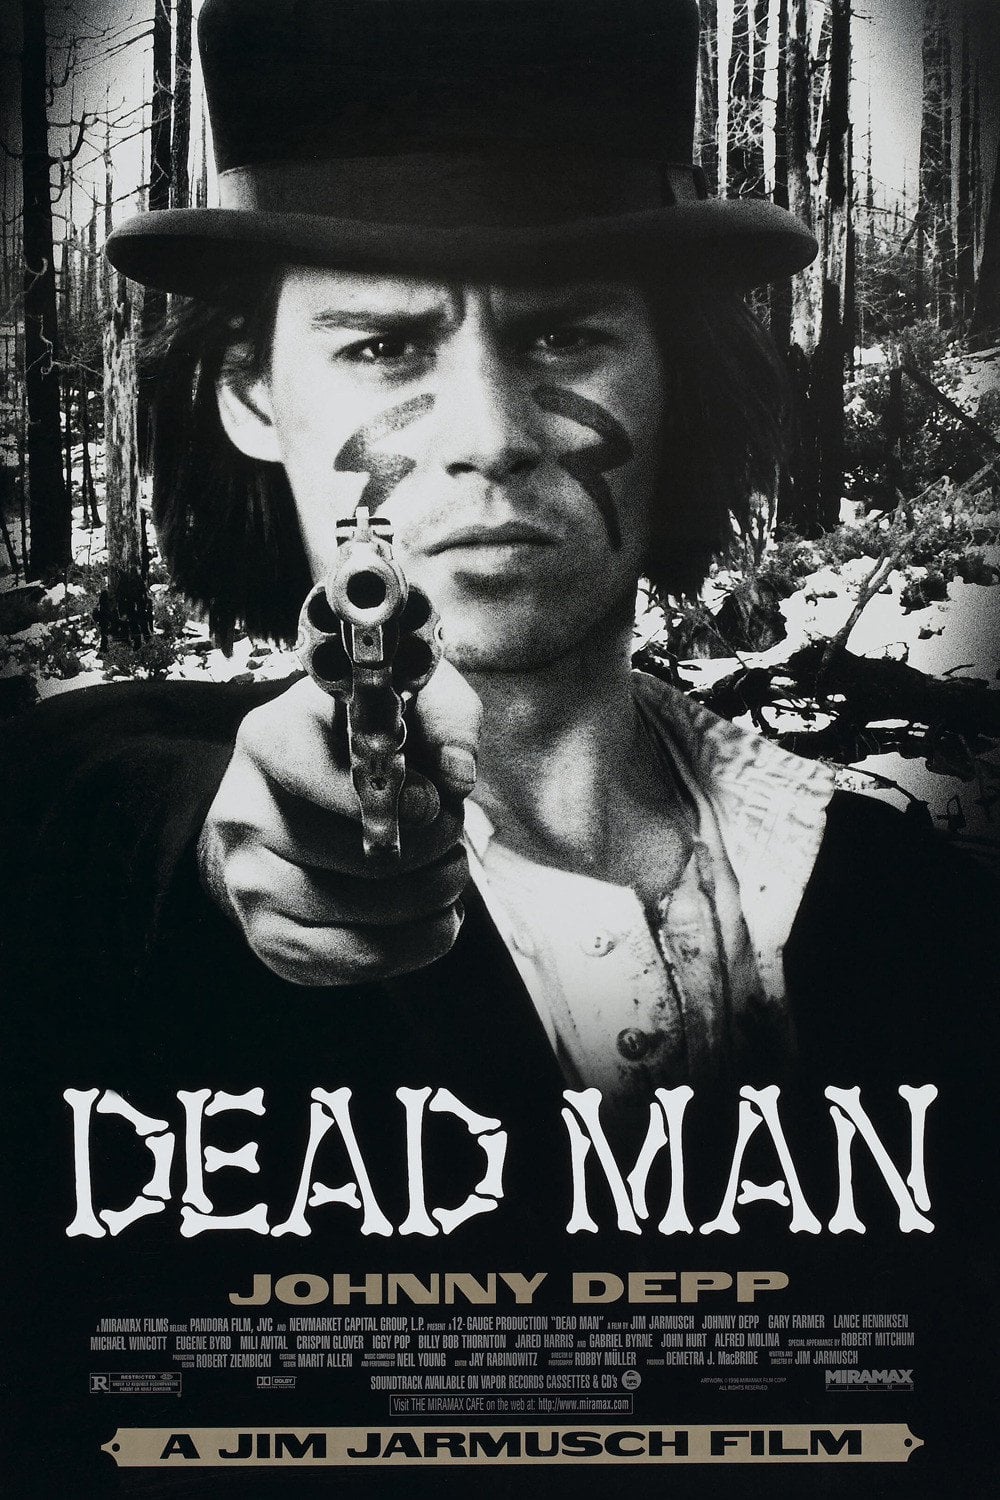 Plakat von "Dead Man"